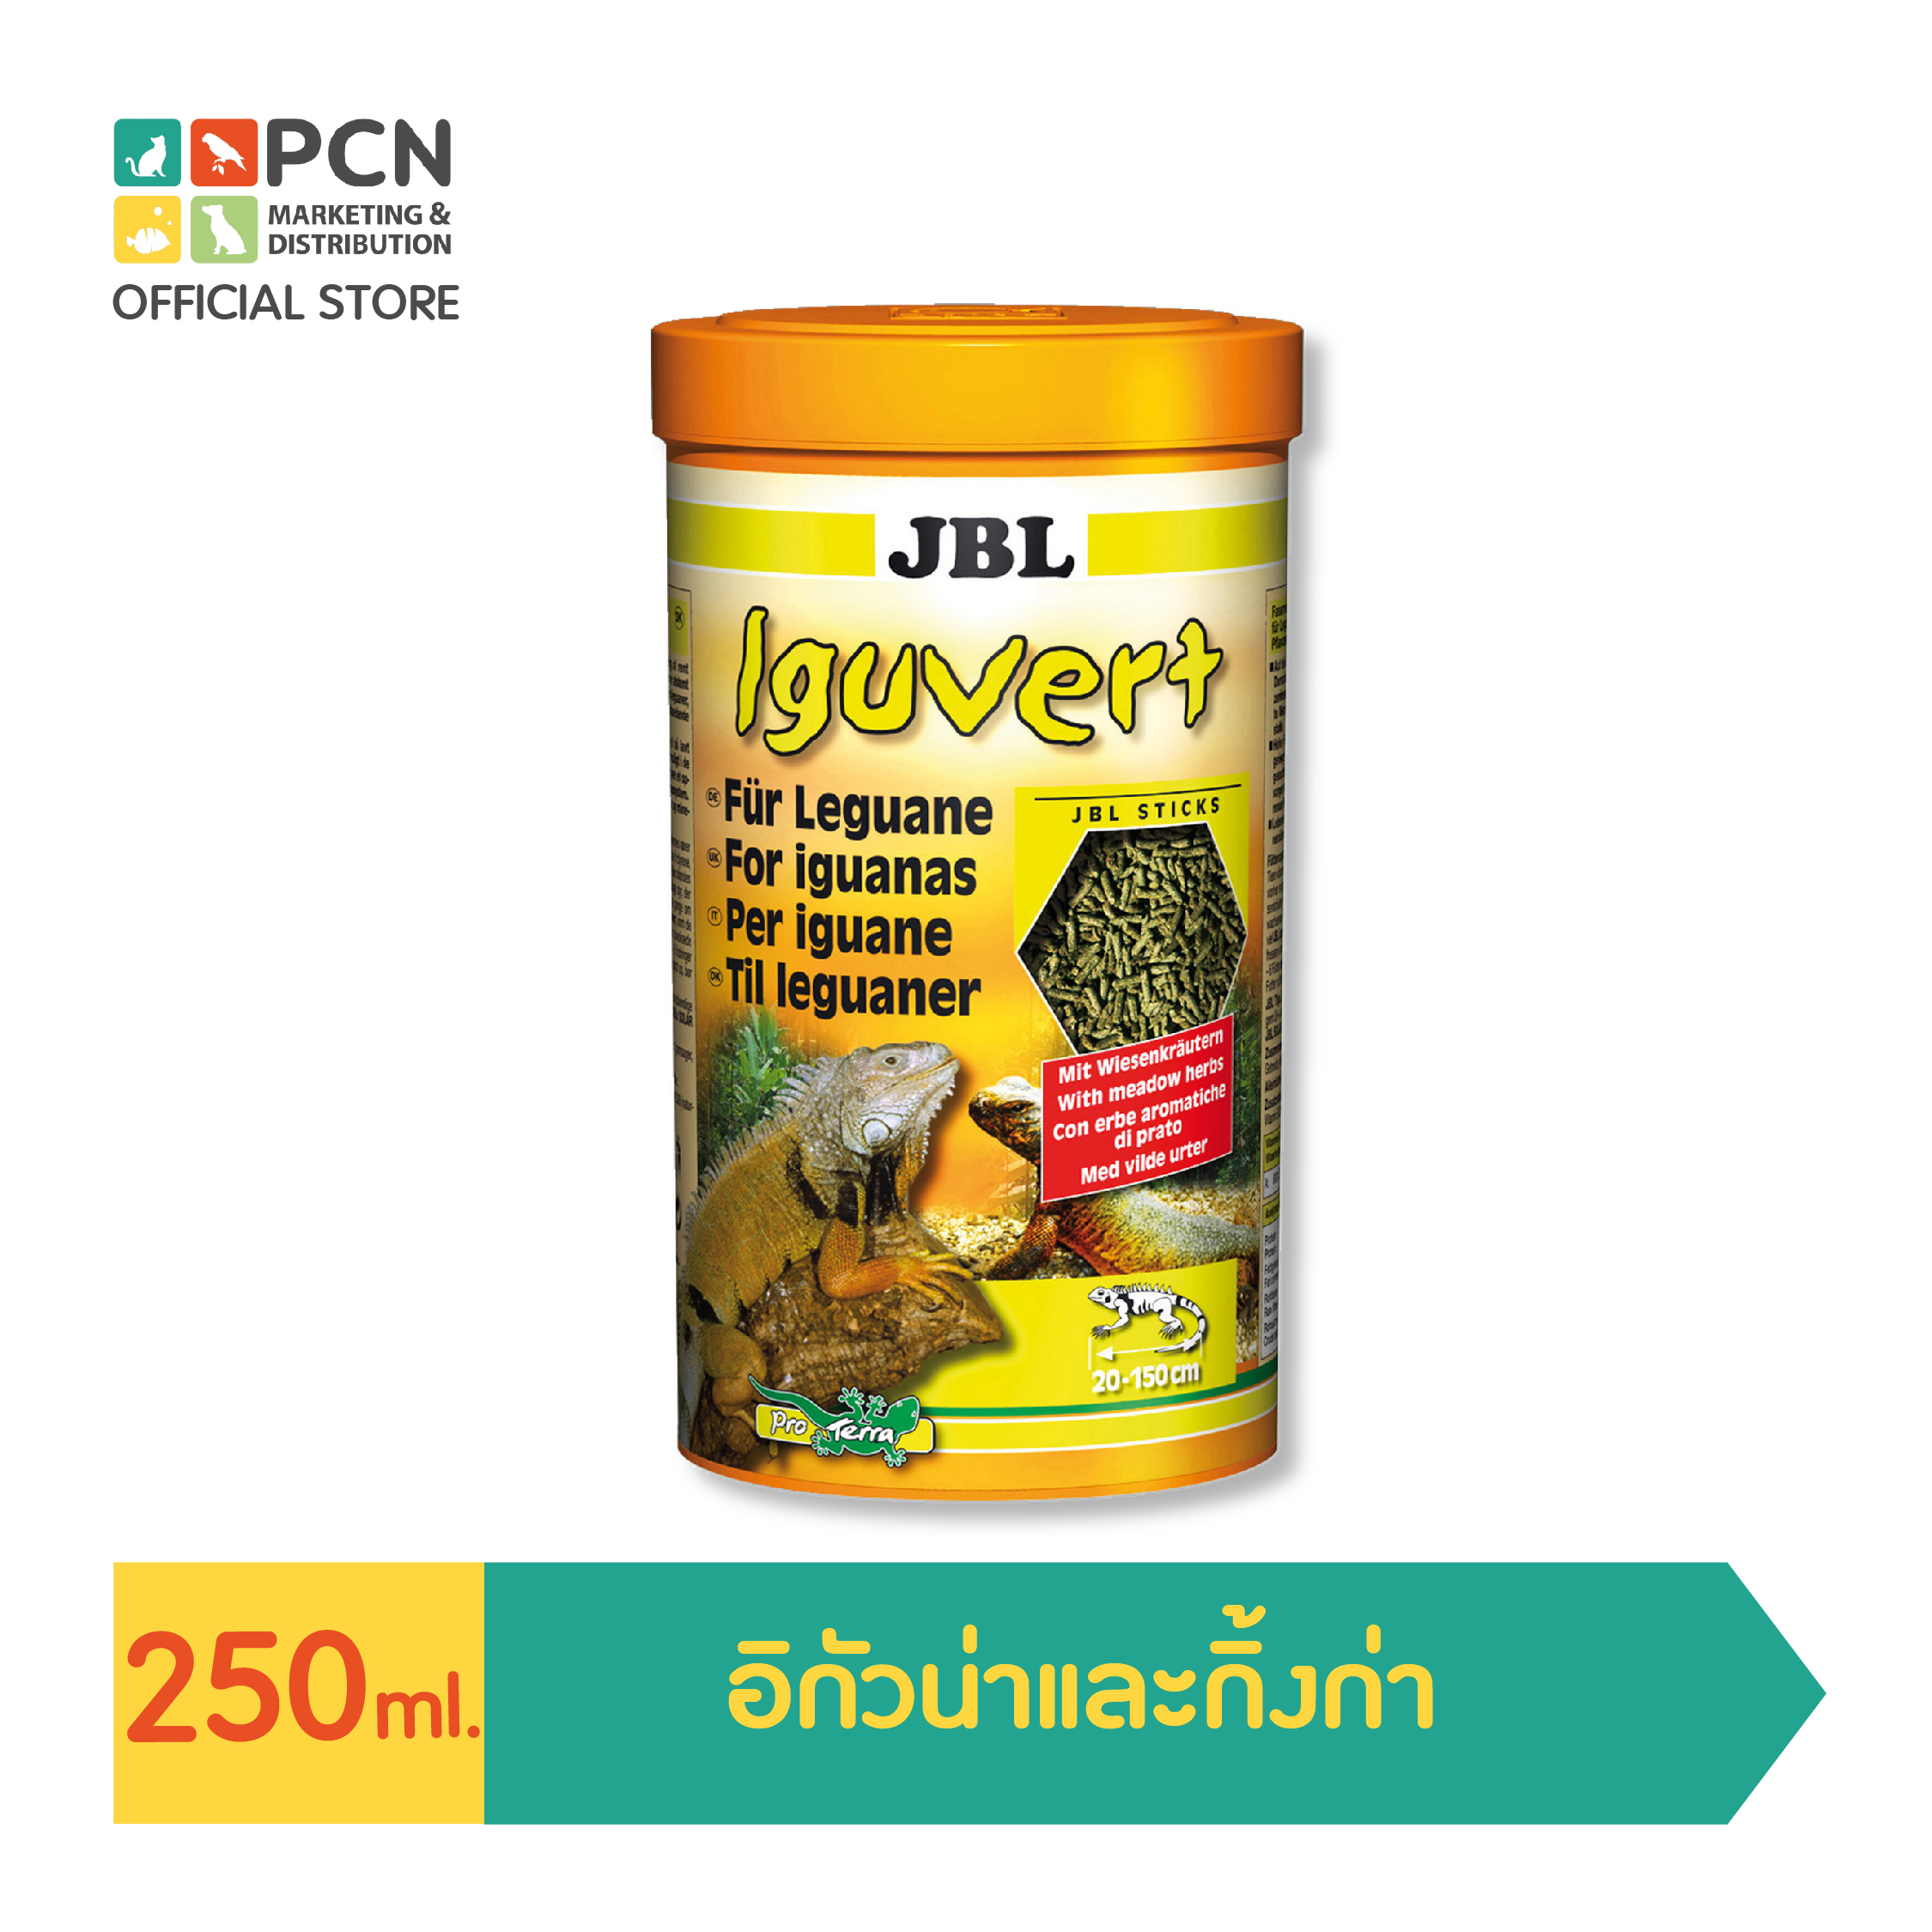 JBL Iguvert อาหารหลักสำหรับอิกัวนาและกิ้งก่า (น้ำหนัก: 105 กรัมขนาด: 250 มล.)